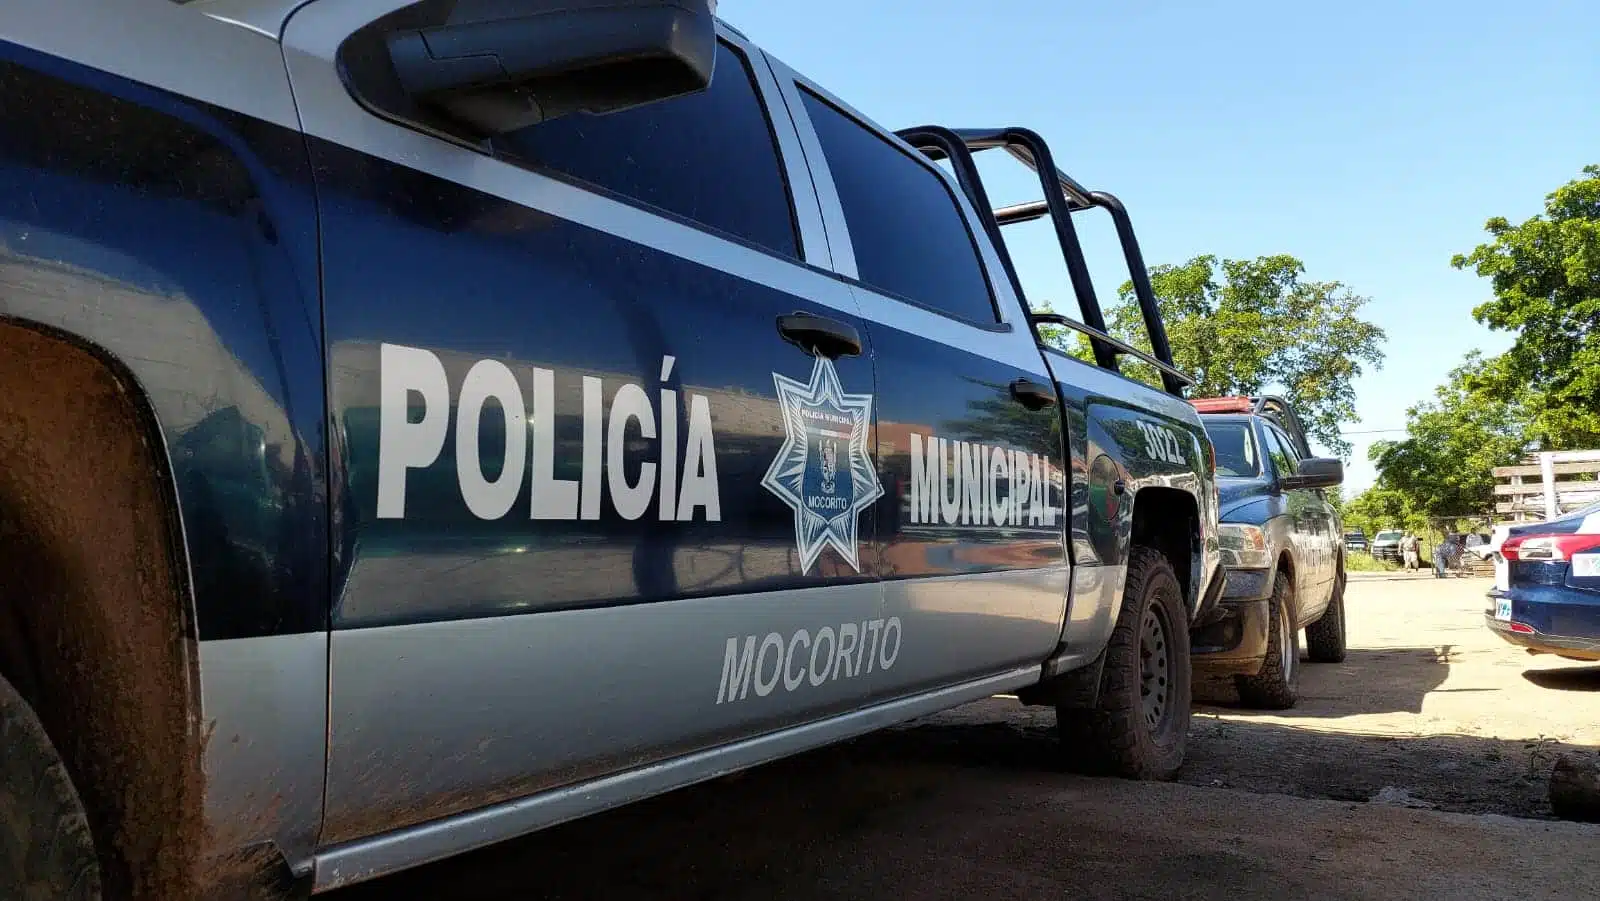 Policía Municipal de Mocorito